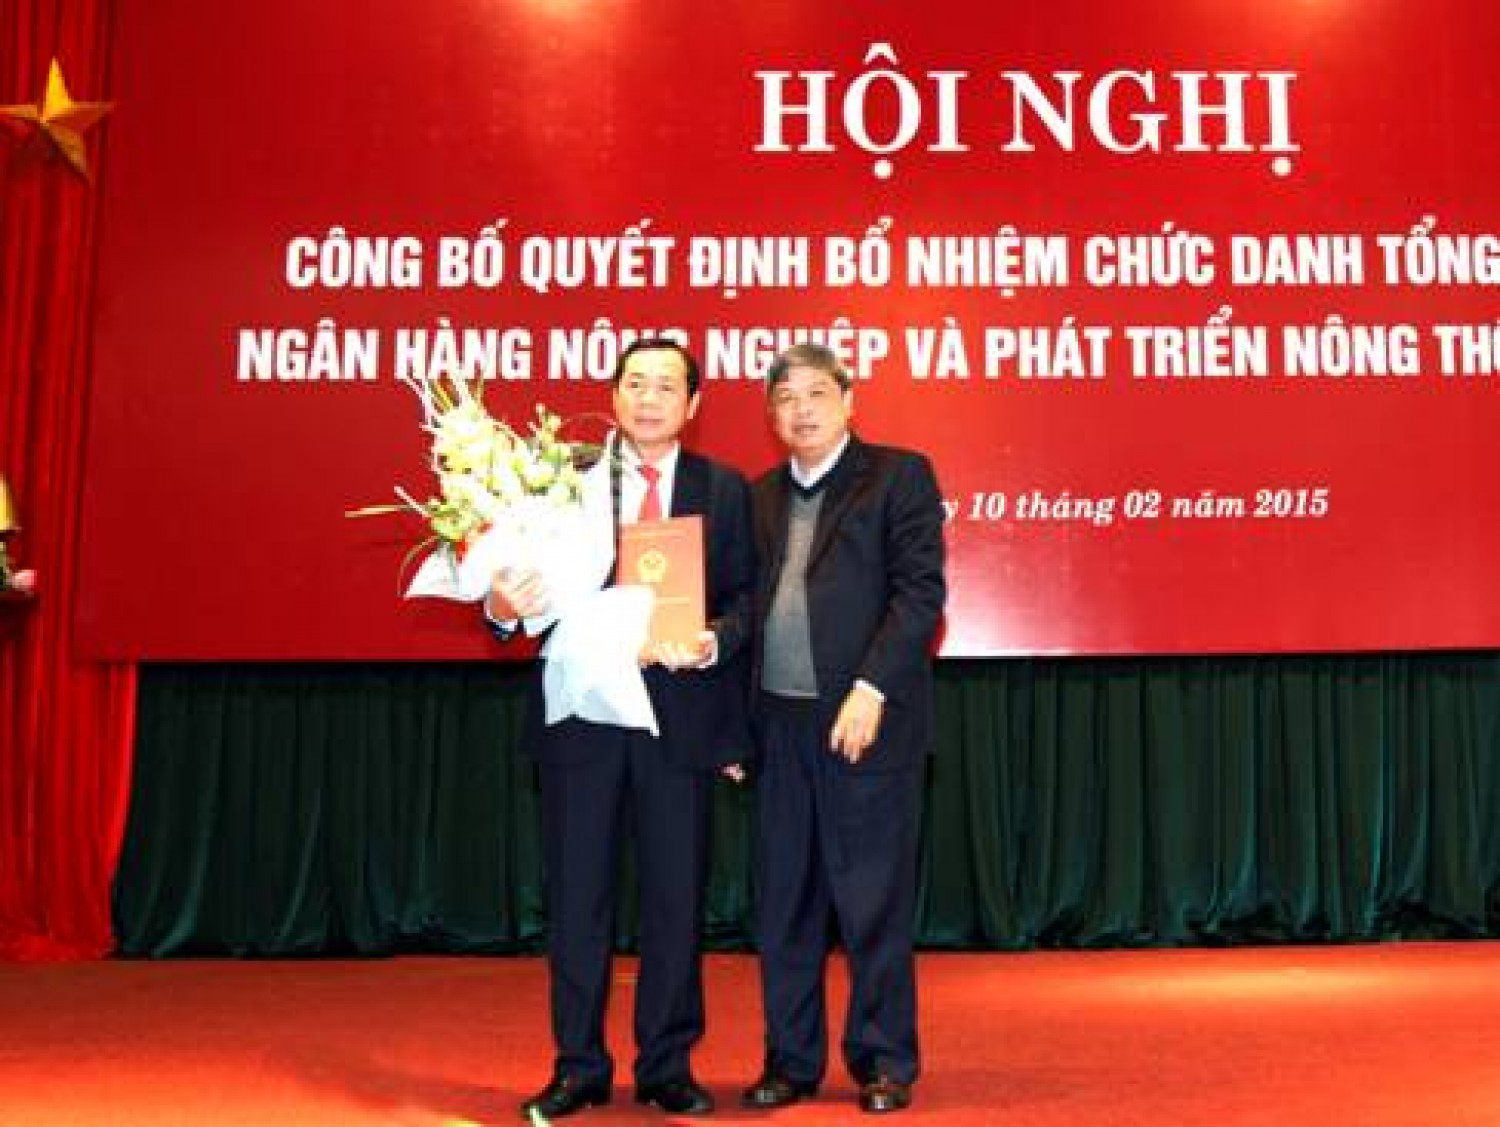 Ông Tiết Văn Thành chính thức giữ chức Tổng giám đốc Agribank